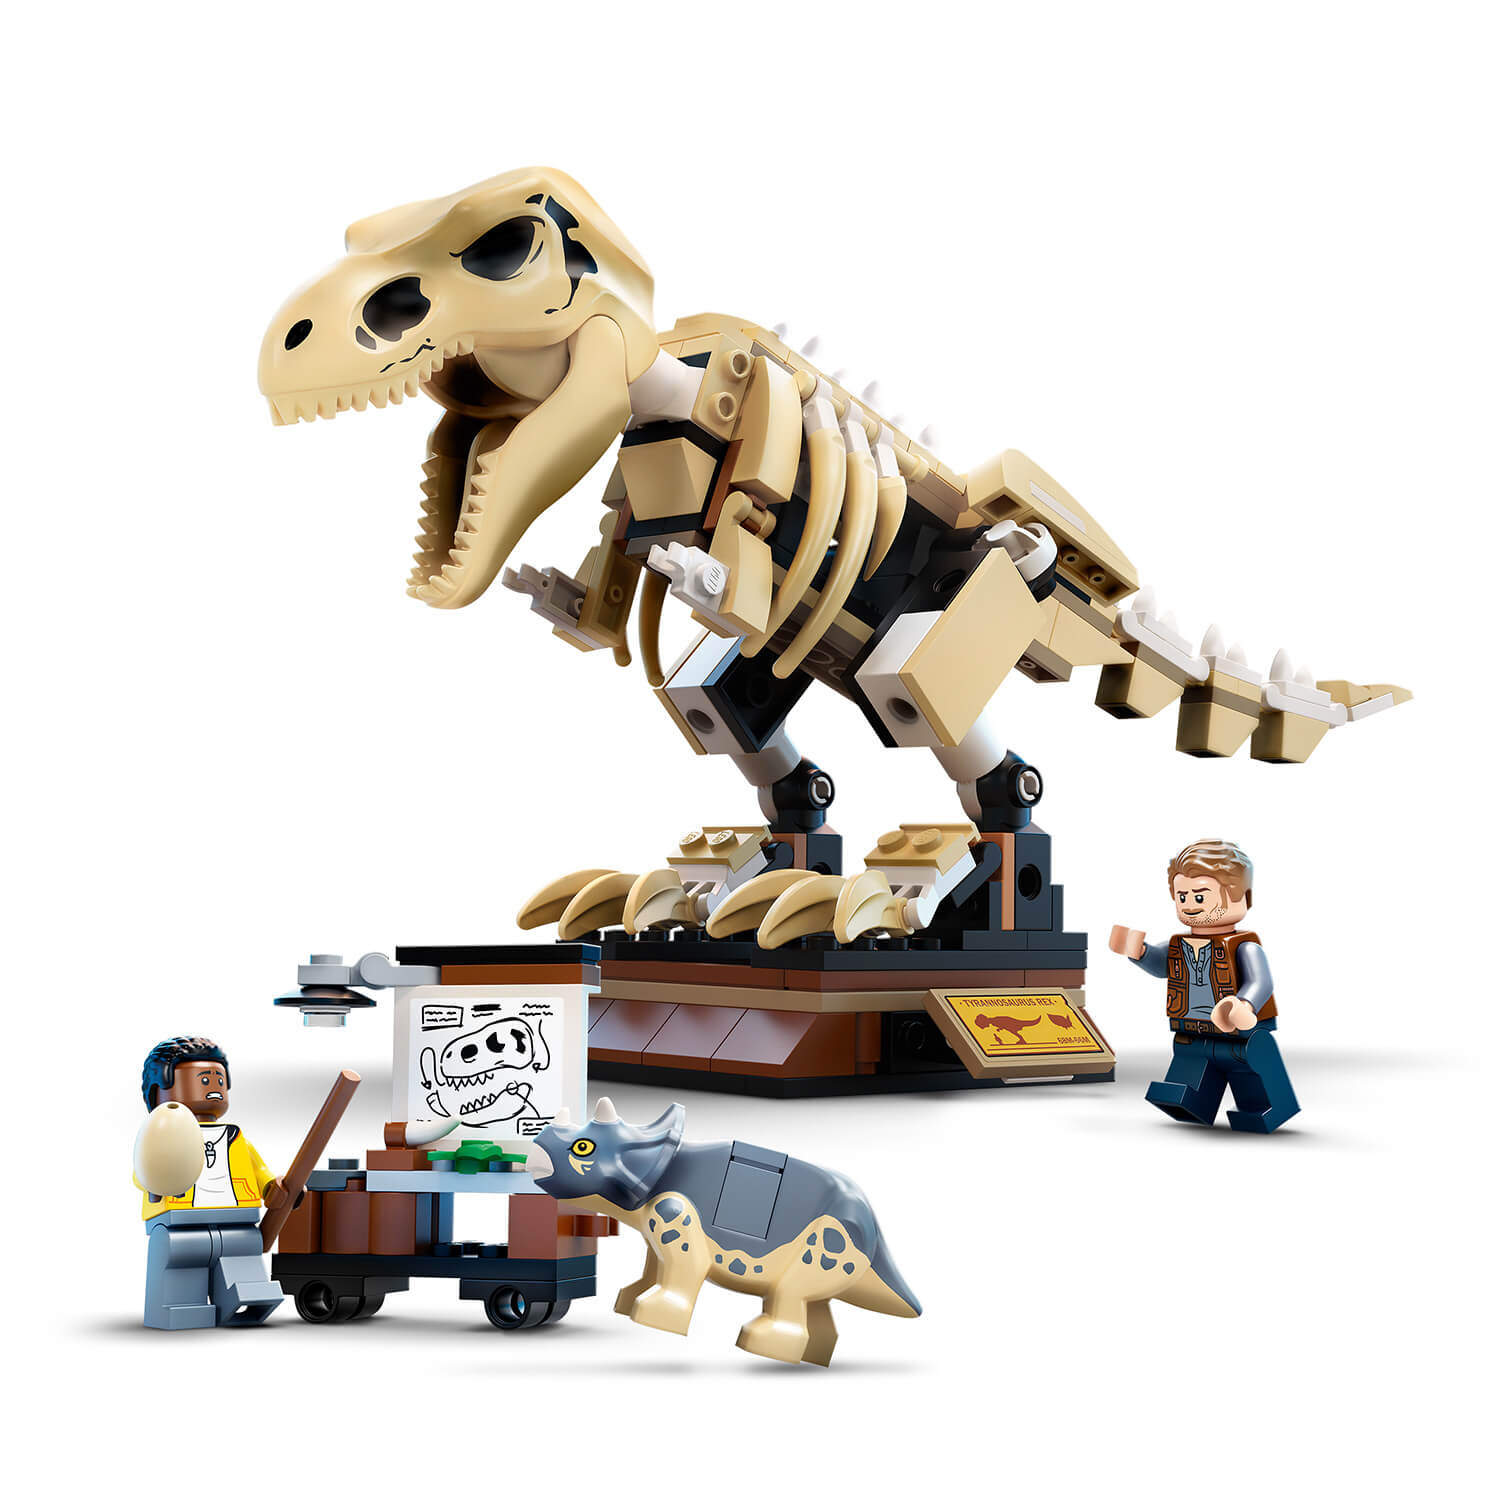 Postavte si výstavu fosilií T-rexe